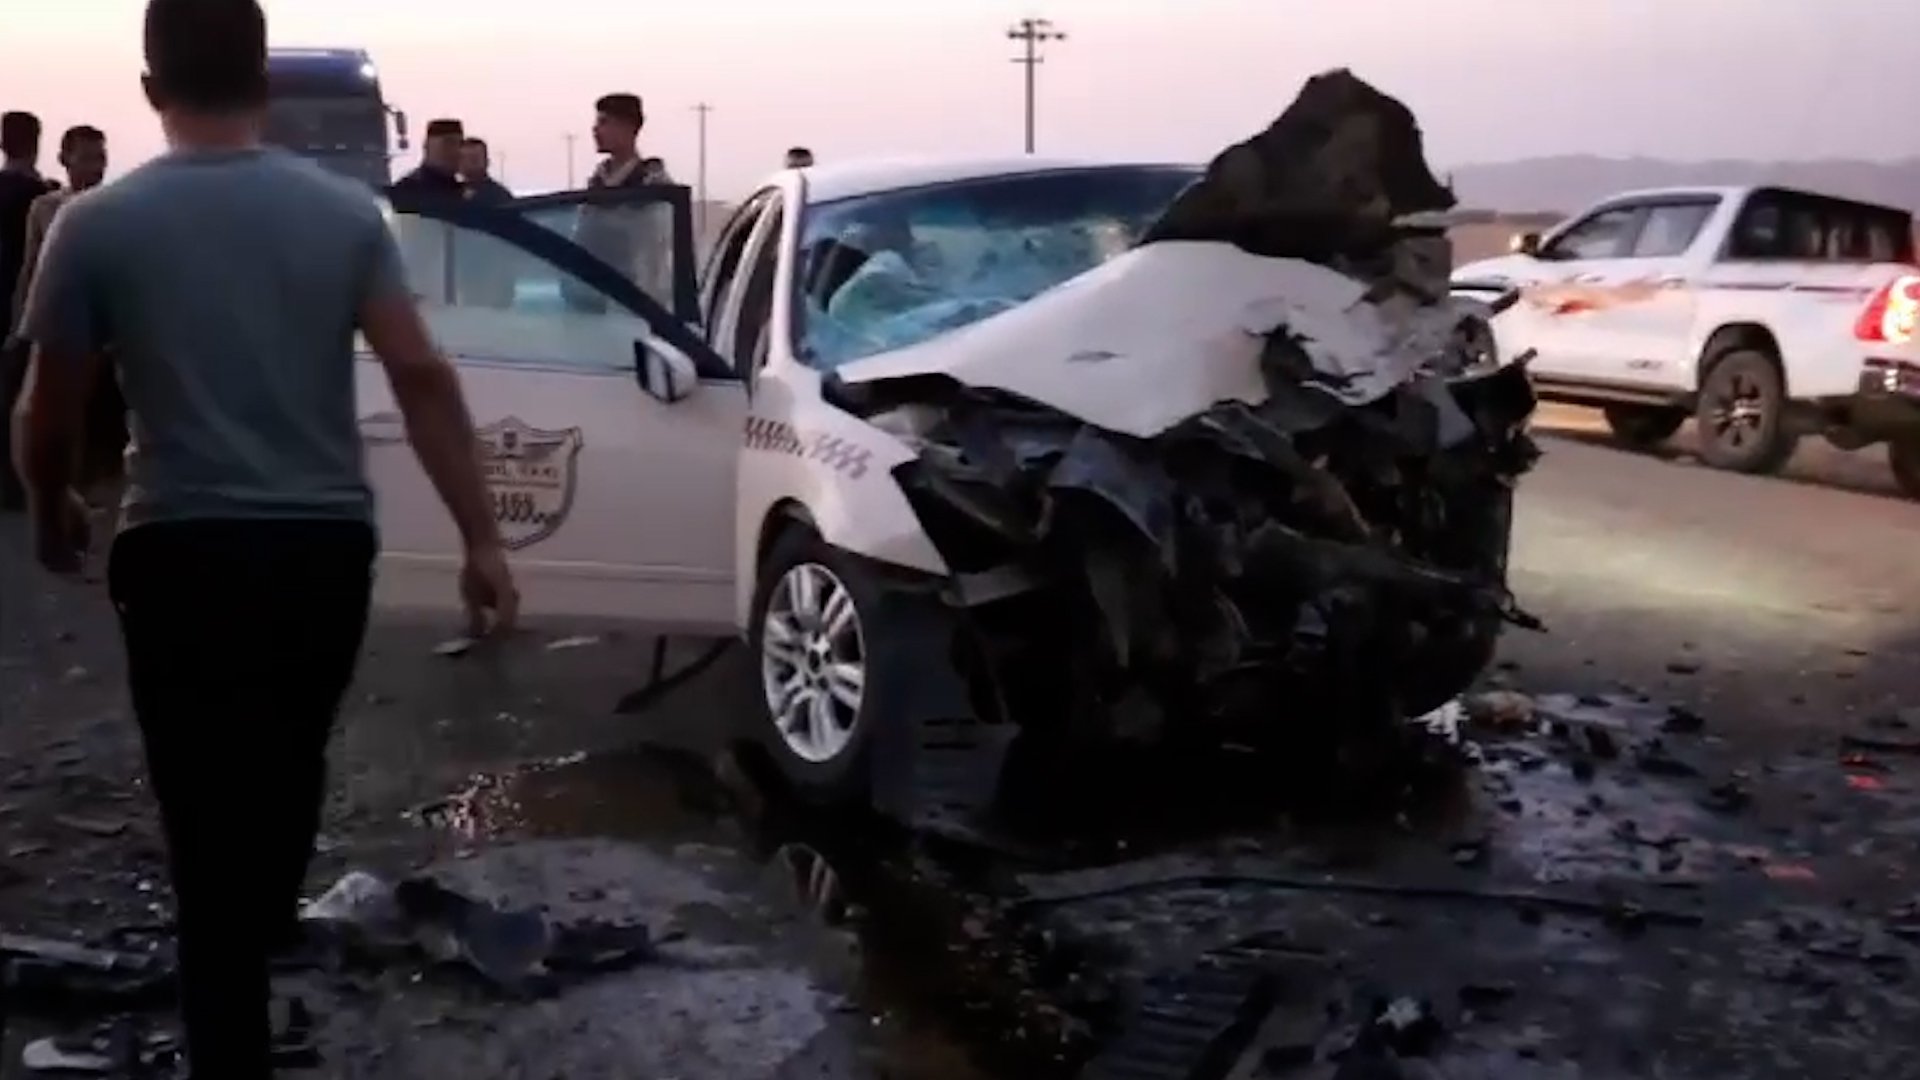 فيديو: حادث مدمر في طوزخورماتو يوقع قتيلين و6 مصابين